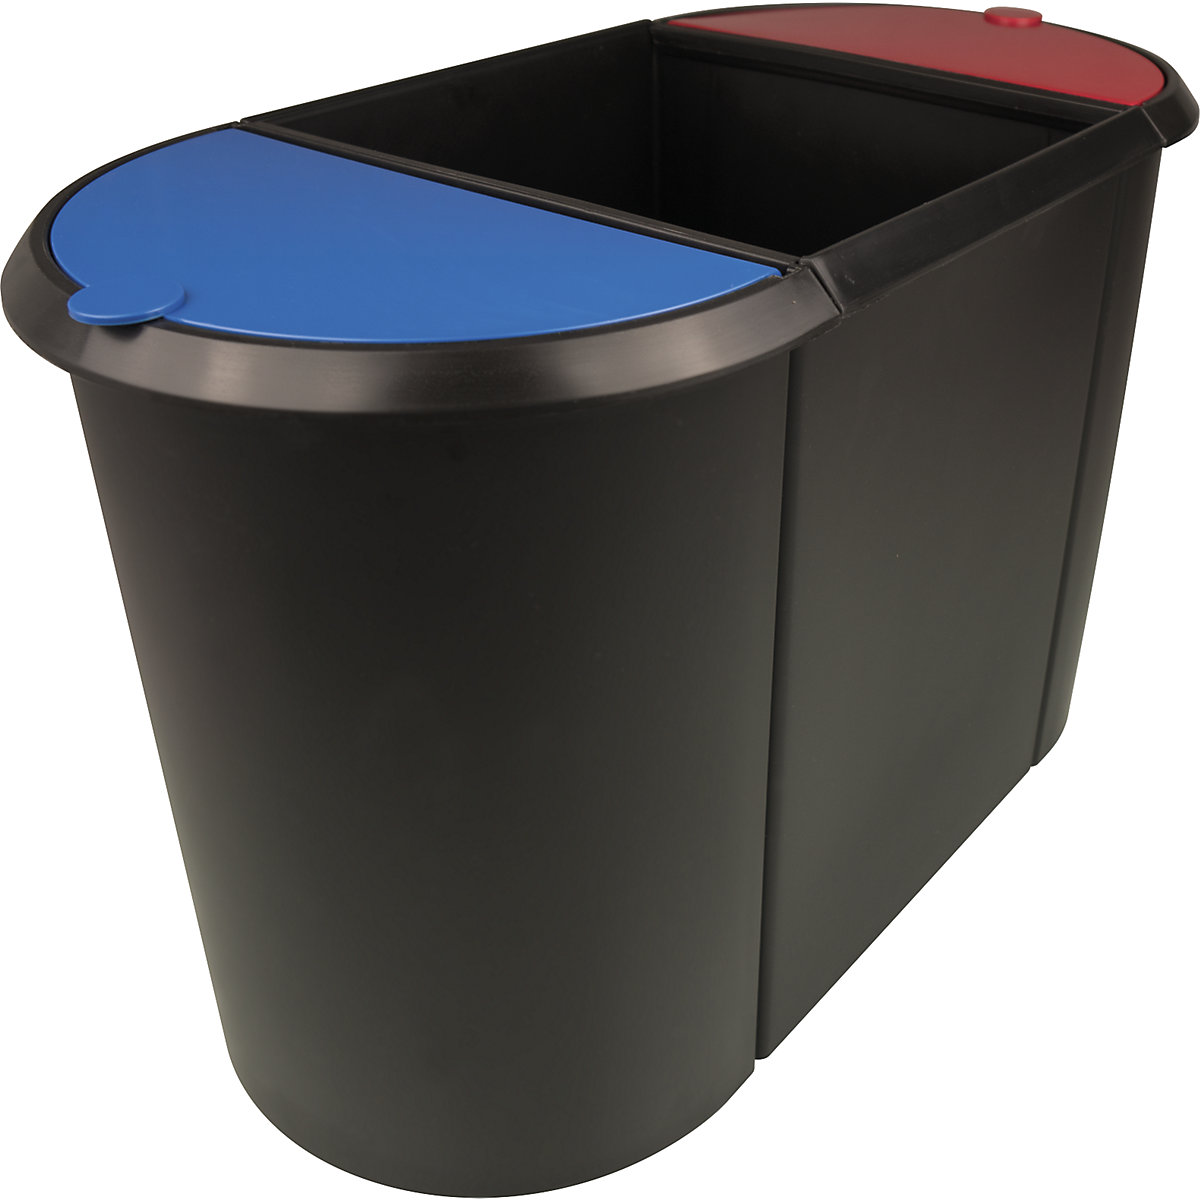 helit – Corbeille à papier modulaire, TRIO, couvercle bleu / rouge, corps noir, lot de 2